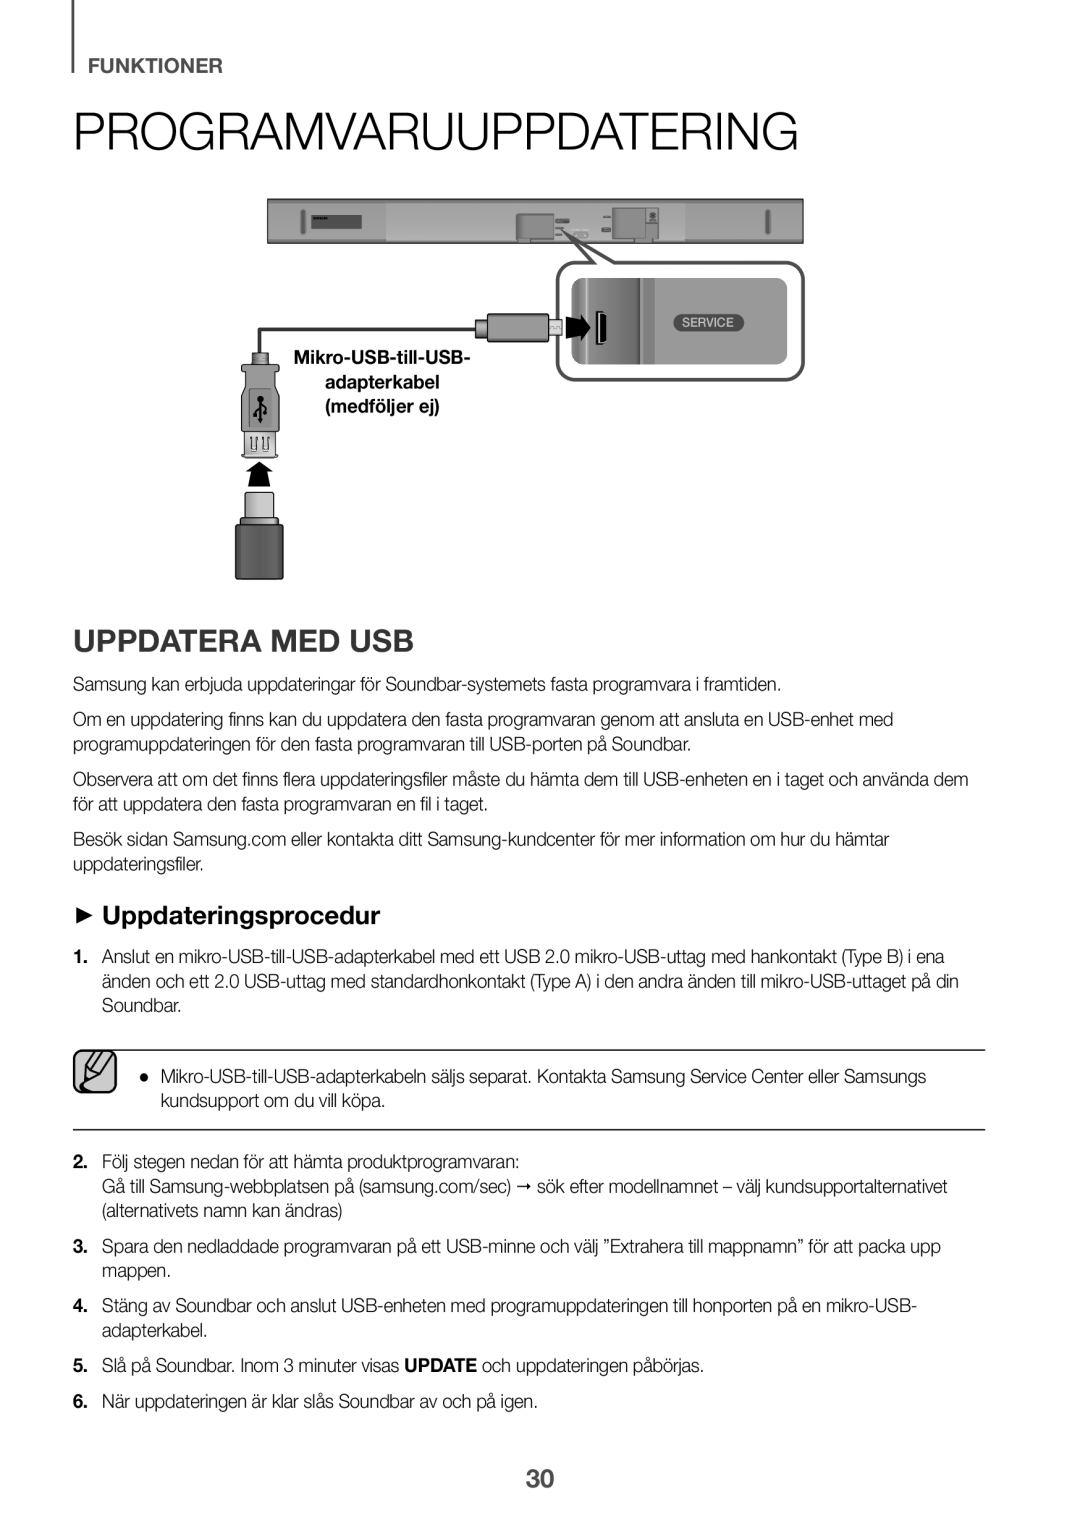 Samsung HW-K651/ZF manual Programvaruuppdatering, Uppdatera med USB, ++Uppdateringsprocedur, funktioner, Mikro-USB-till-USB 